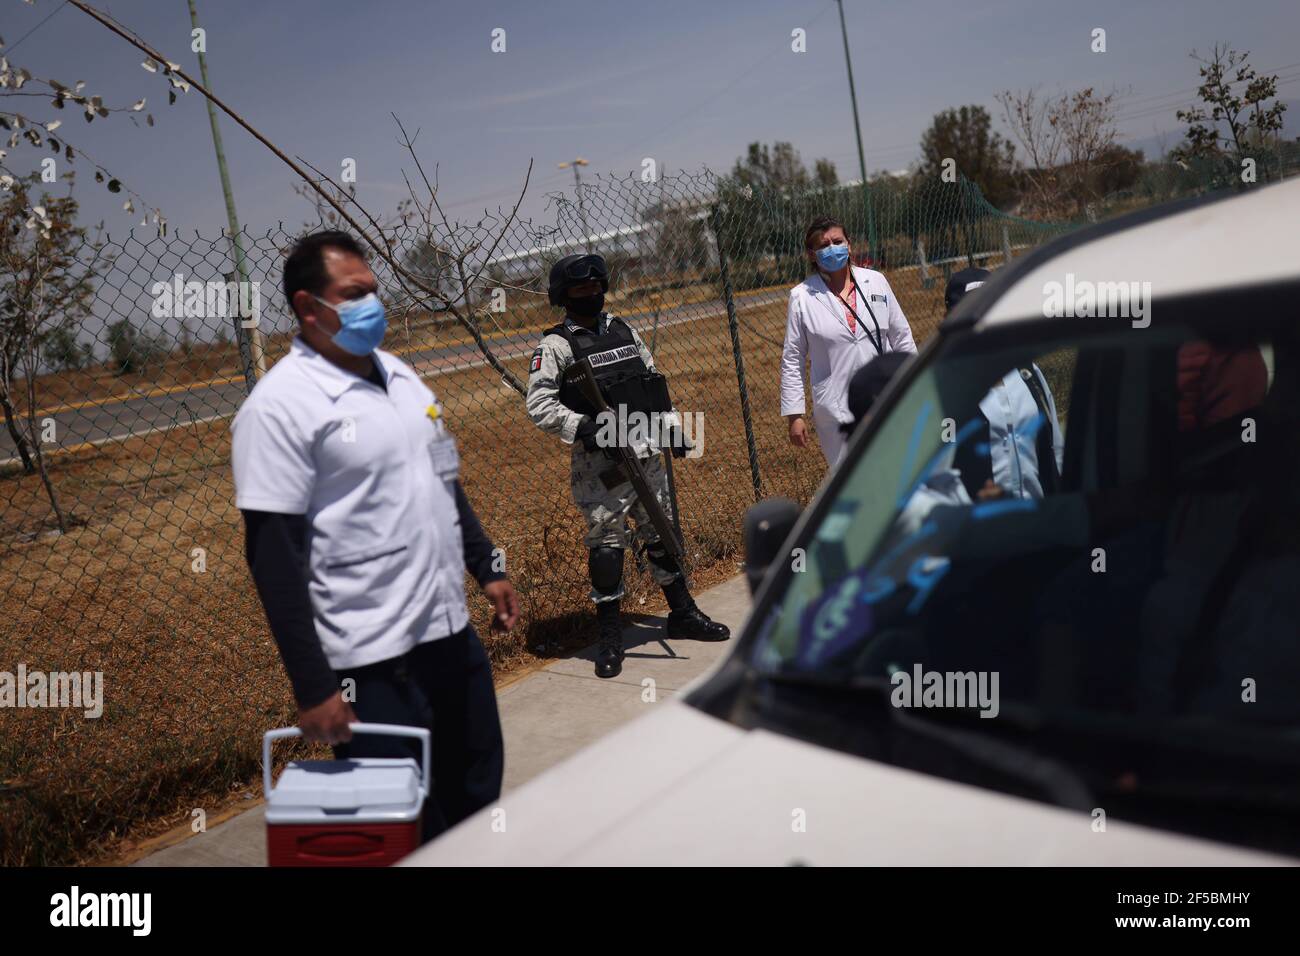 Los miembros de la Guardia Nacional vigilan mientras la gente espera recibir la vacuna China Sinovac Biotech contra la enfermedad del coronavirus (COVID-19) durante el programa de vacunación masiva para las personas mayores en un punto de vacunación en la Ciudad de México, México 25 de marzo de 2021. REUTERS/Edgard Garrido Foto de stock